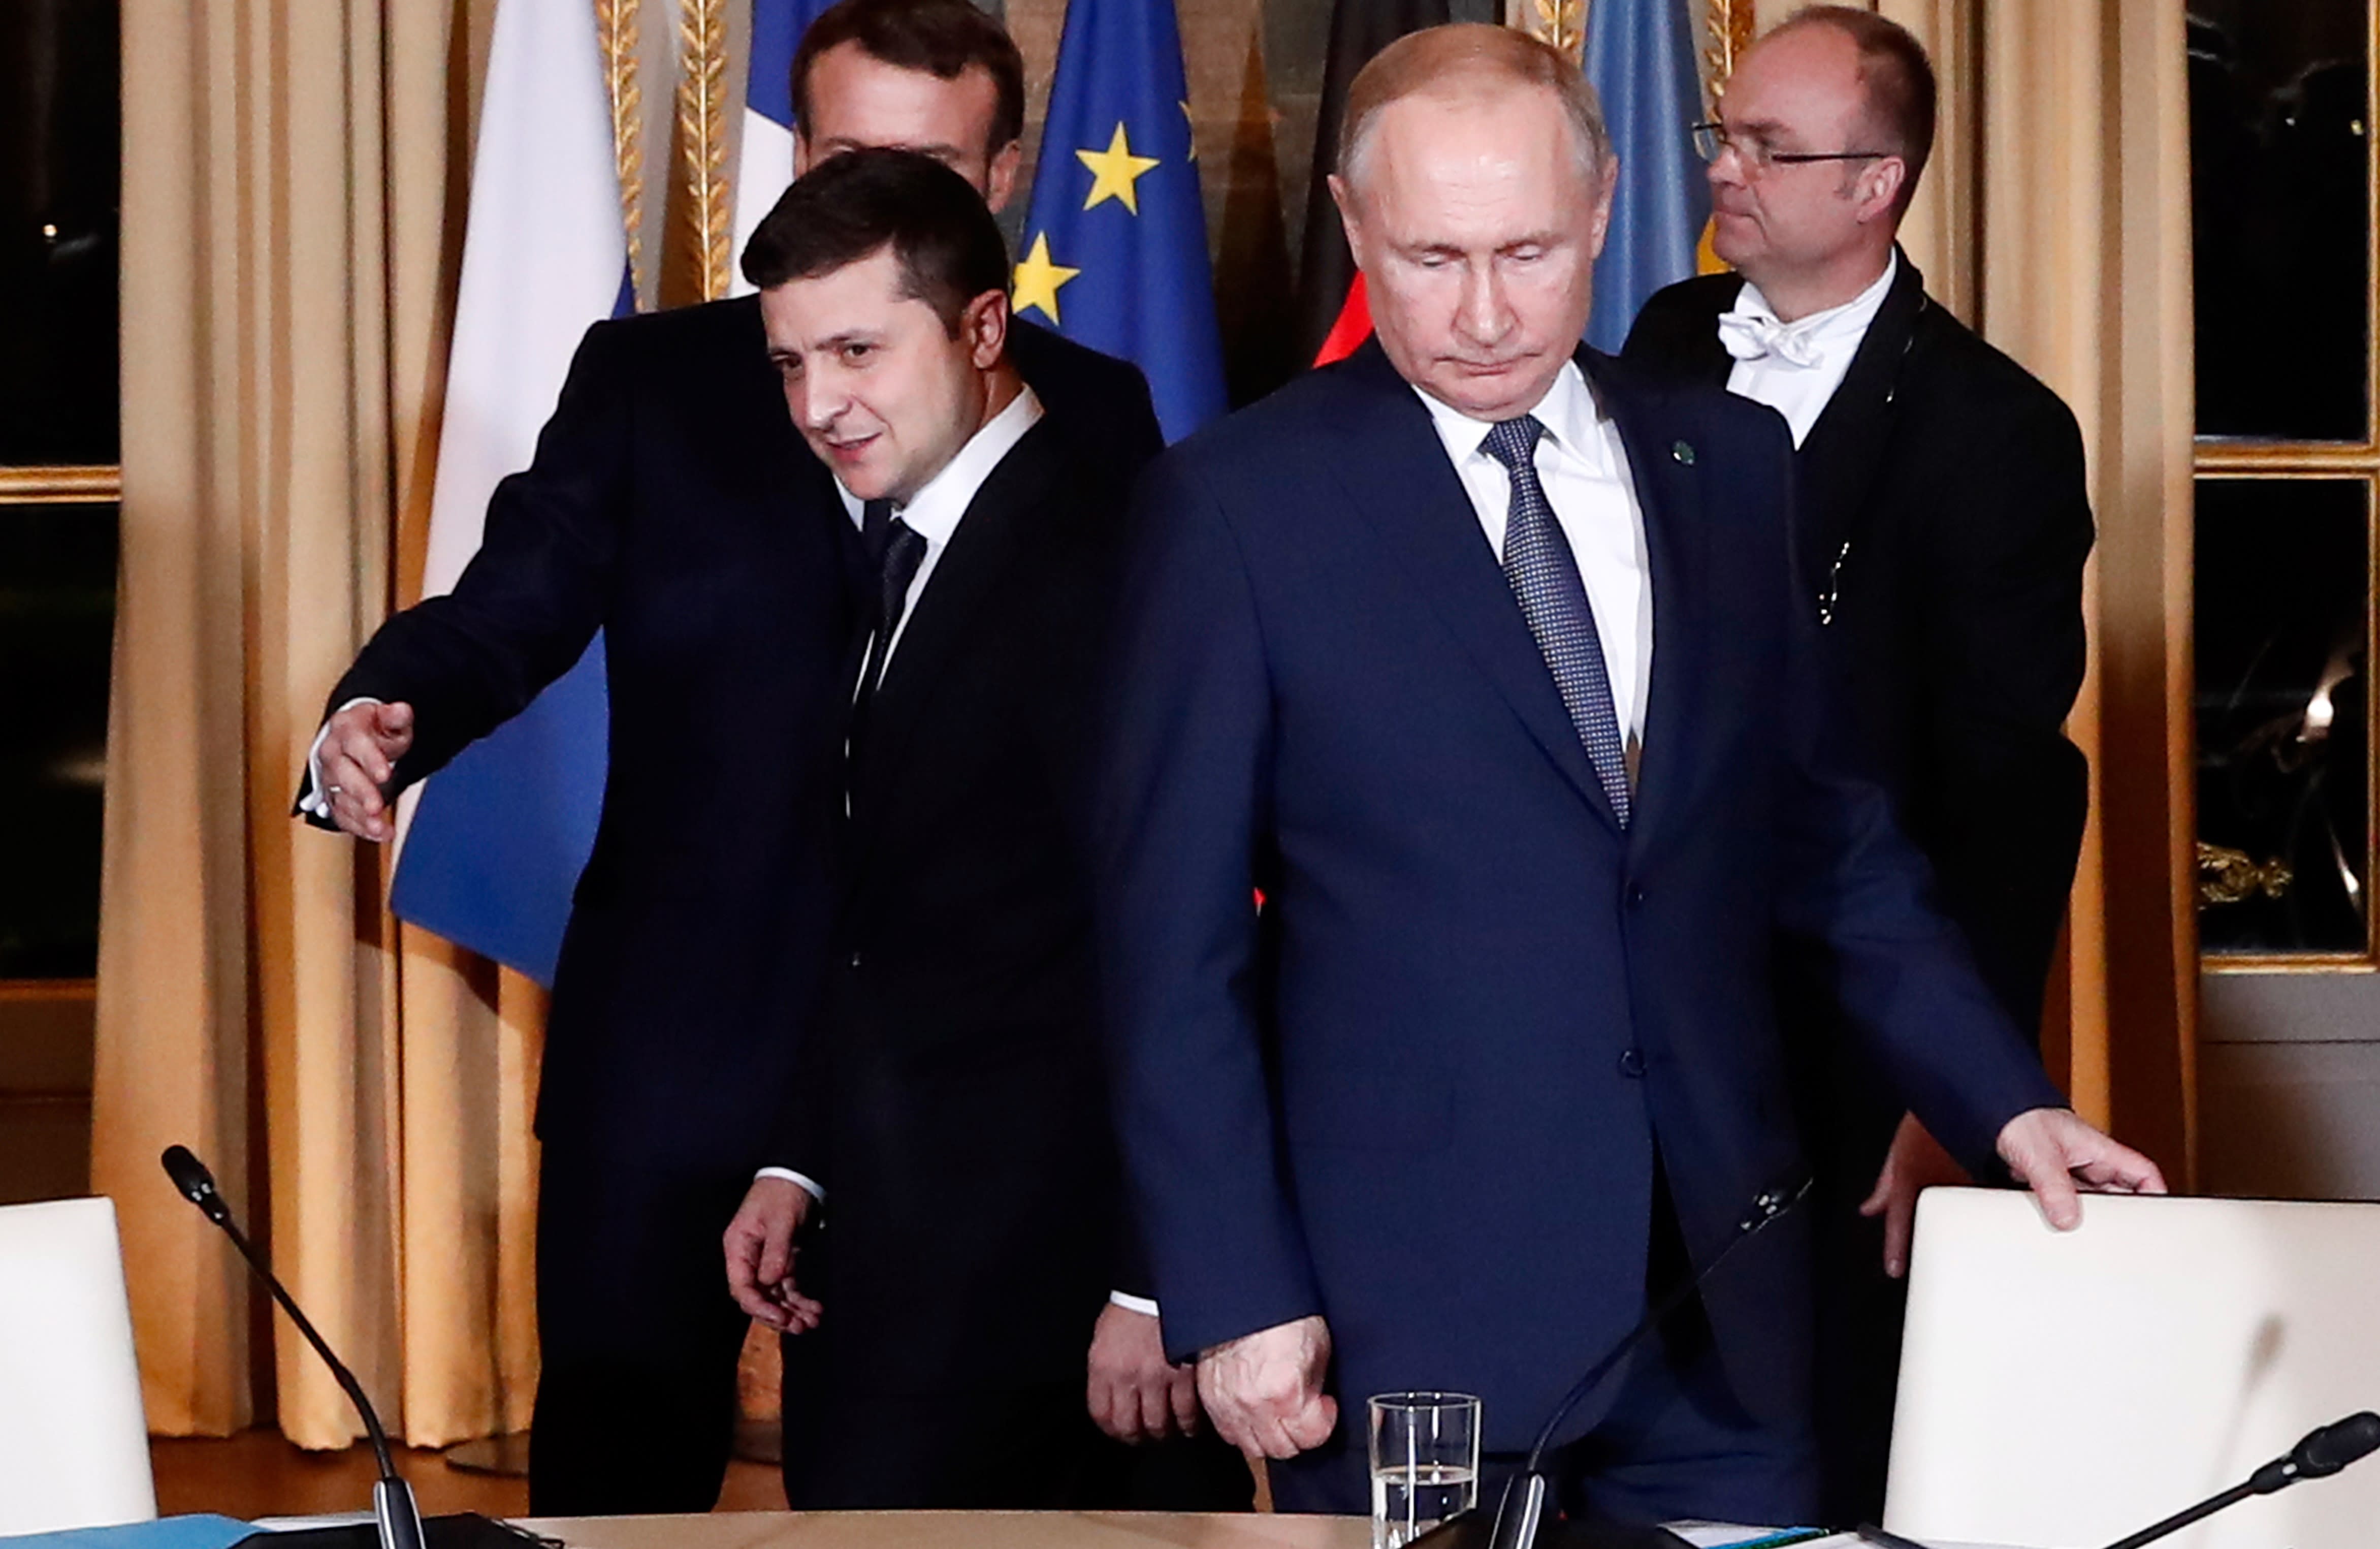 Russia and Ukraine hold talks in Paris